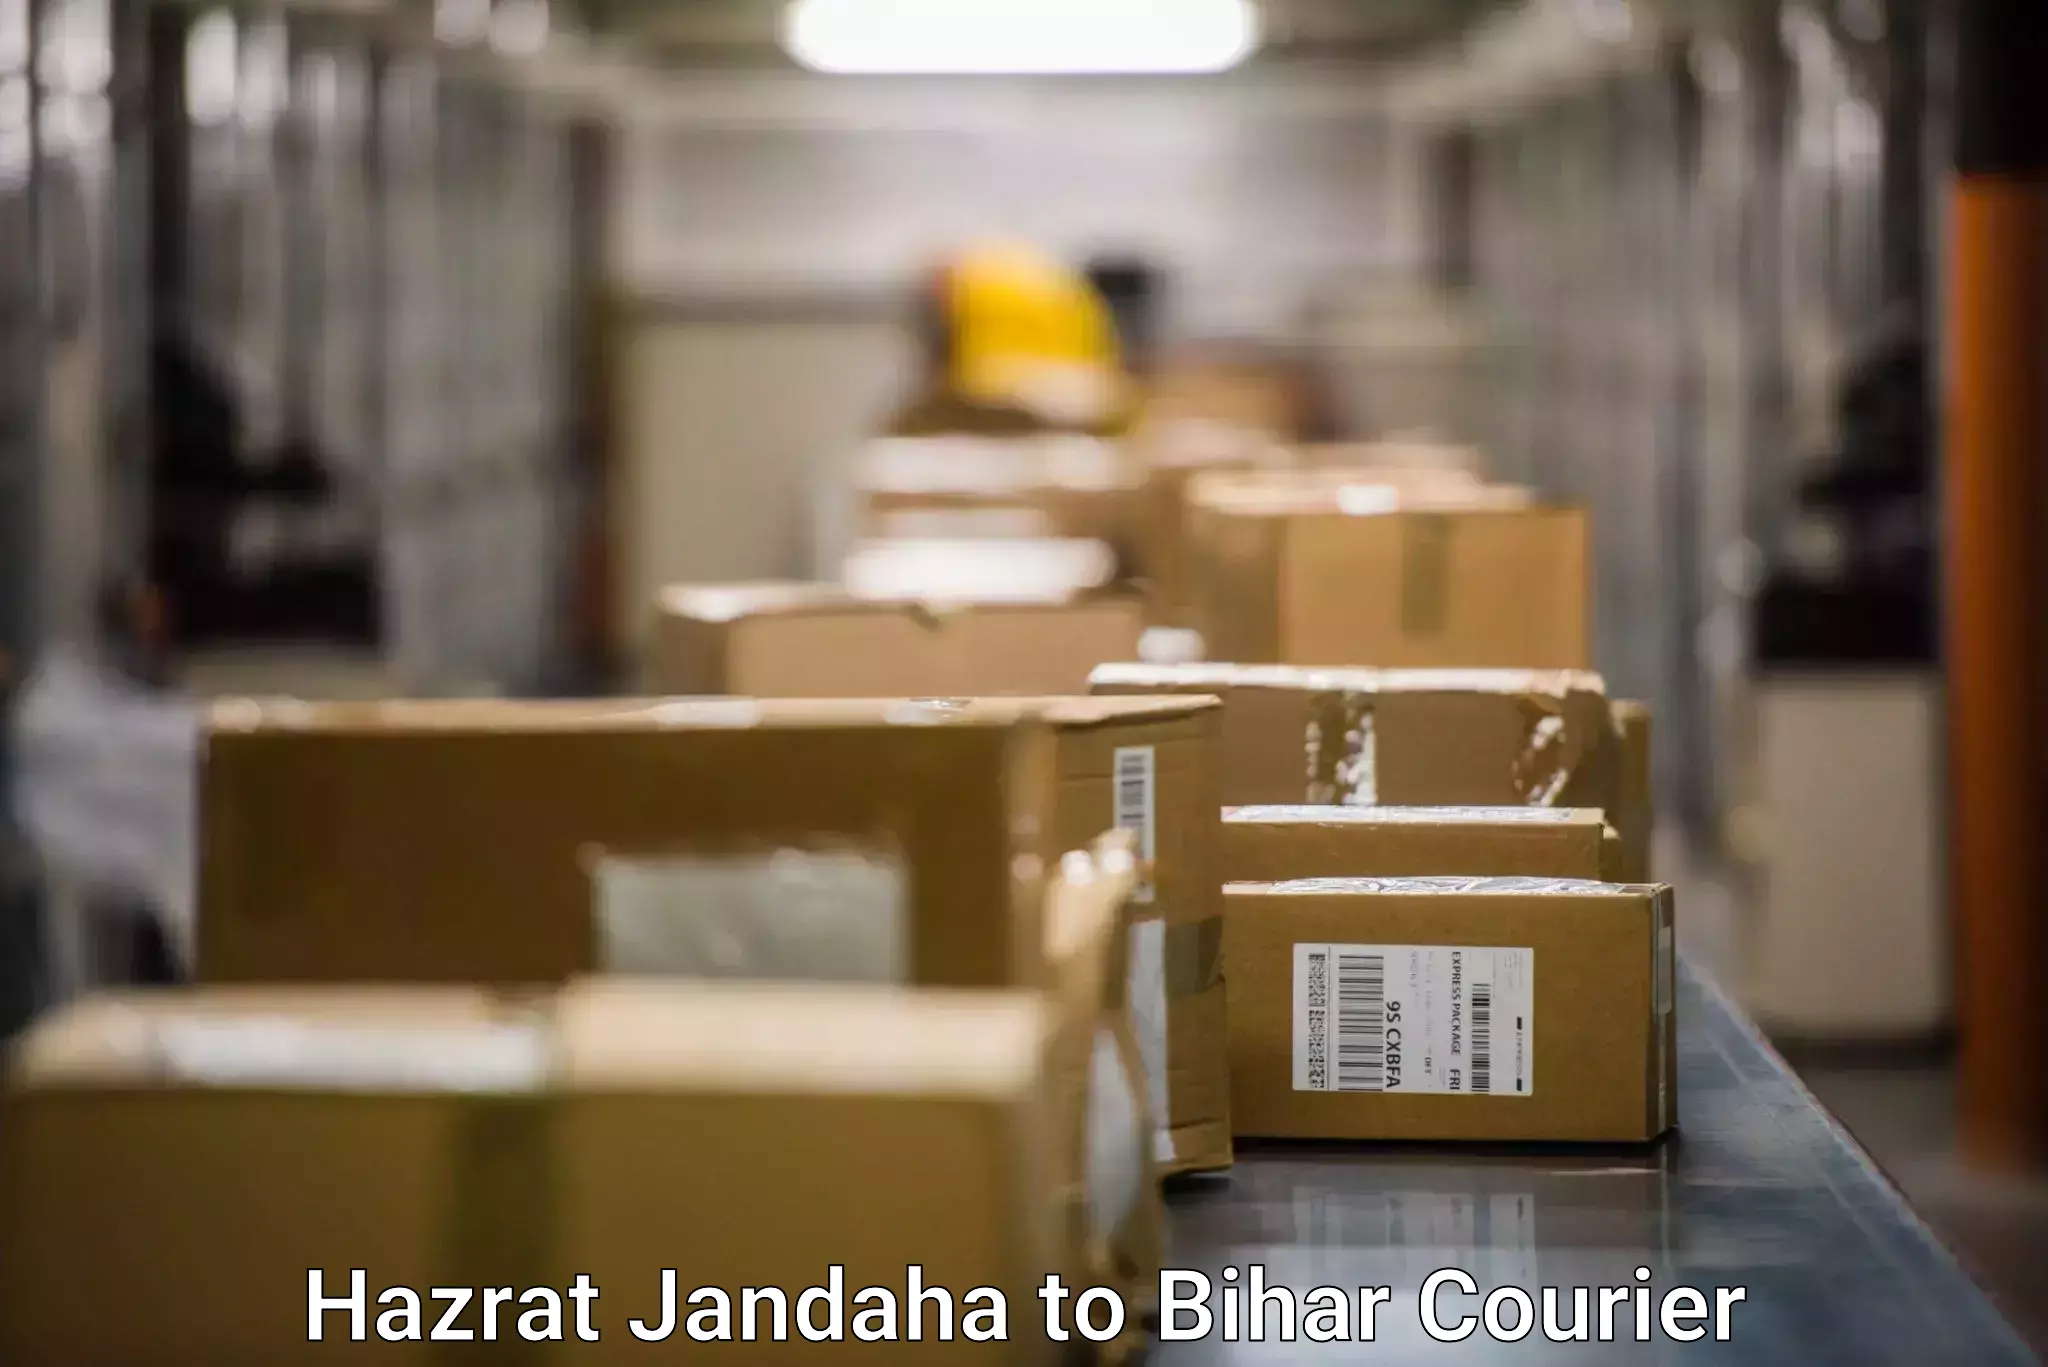 Modern courier technology Hazrat Jandaha to Rajpur